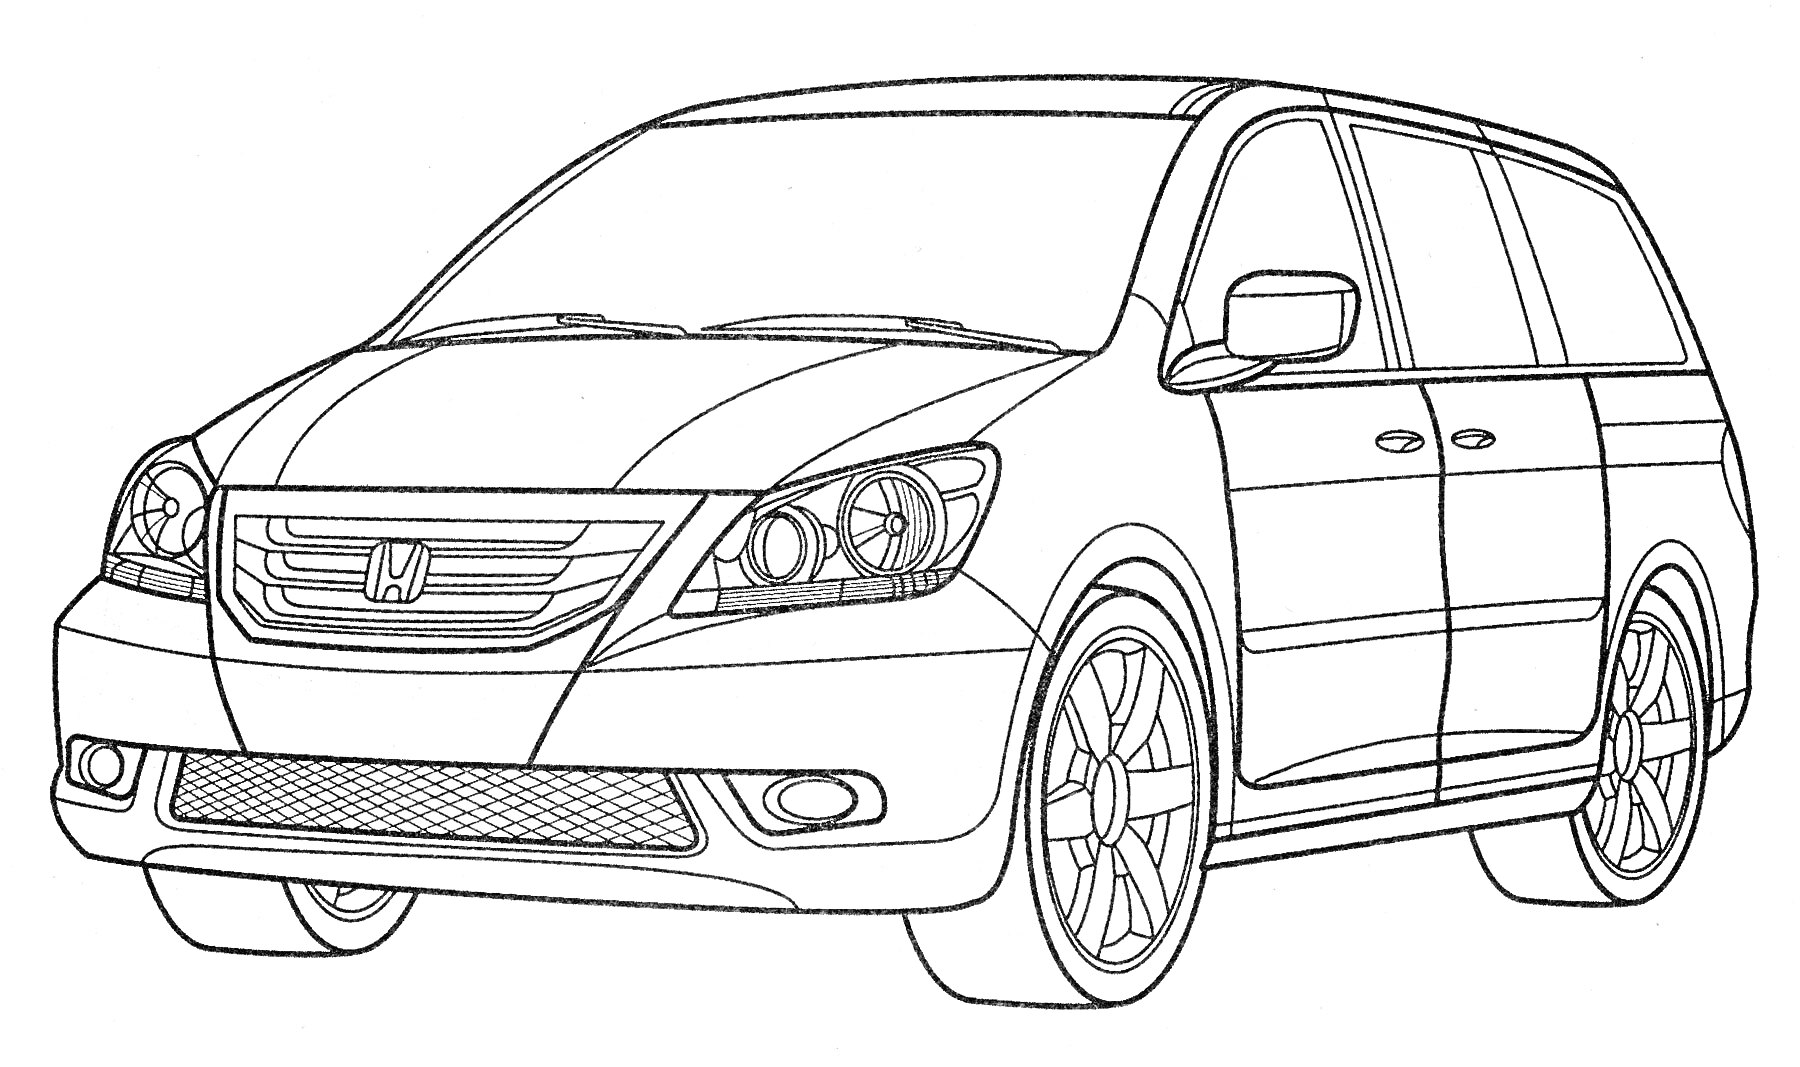 Honda минивэн с видимыми передними фарами, решеткой радиатора, боковыми зеркалами и колесами